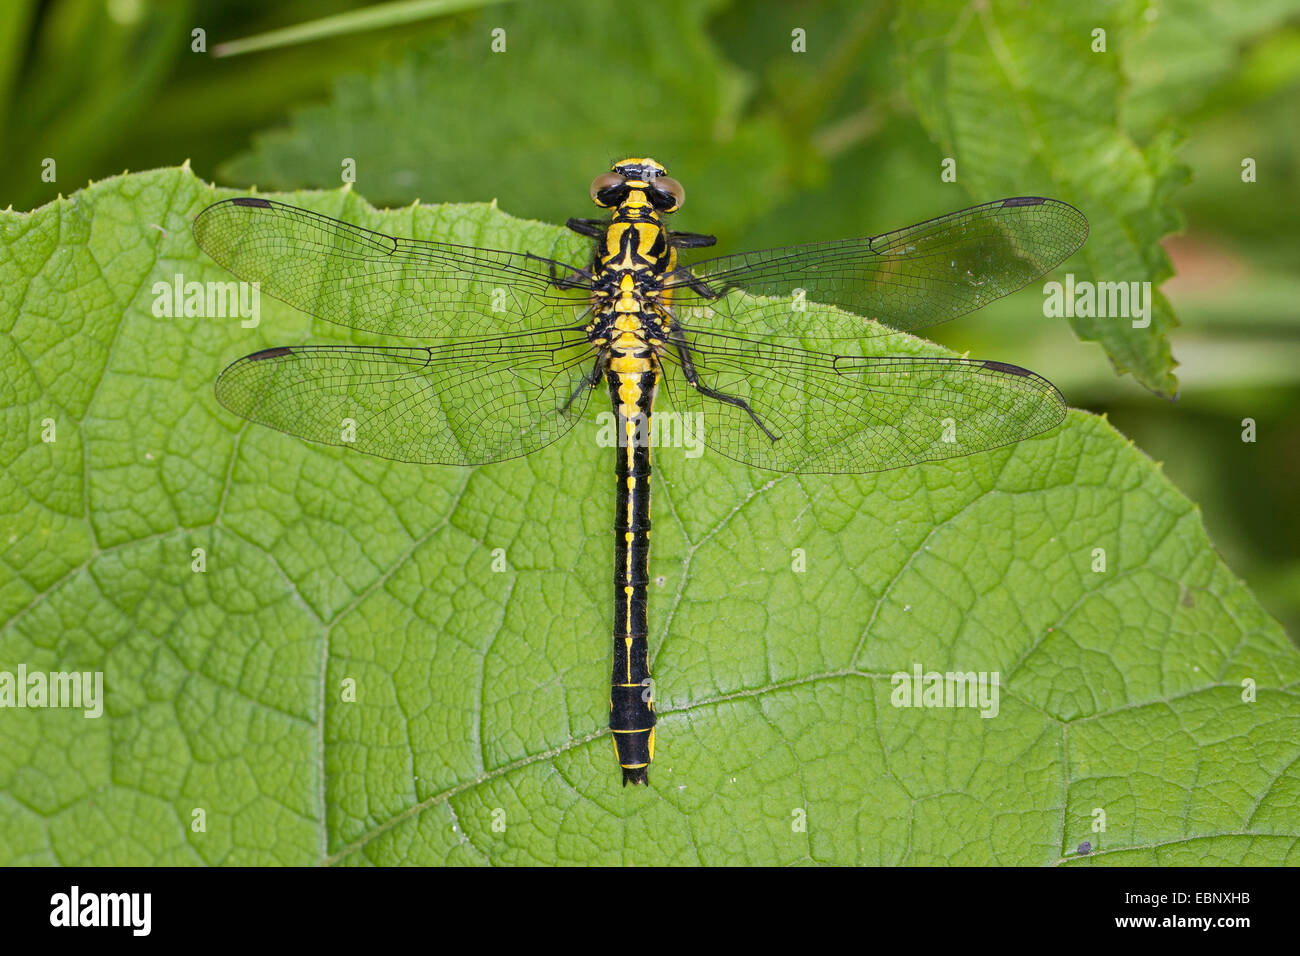 Club-tailed dragonfly (Gomphus vulgatissimus), en una lámina, Alemania Foto de stock